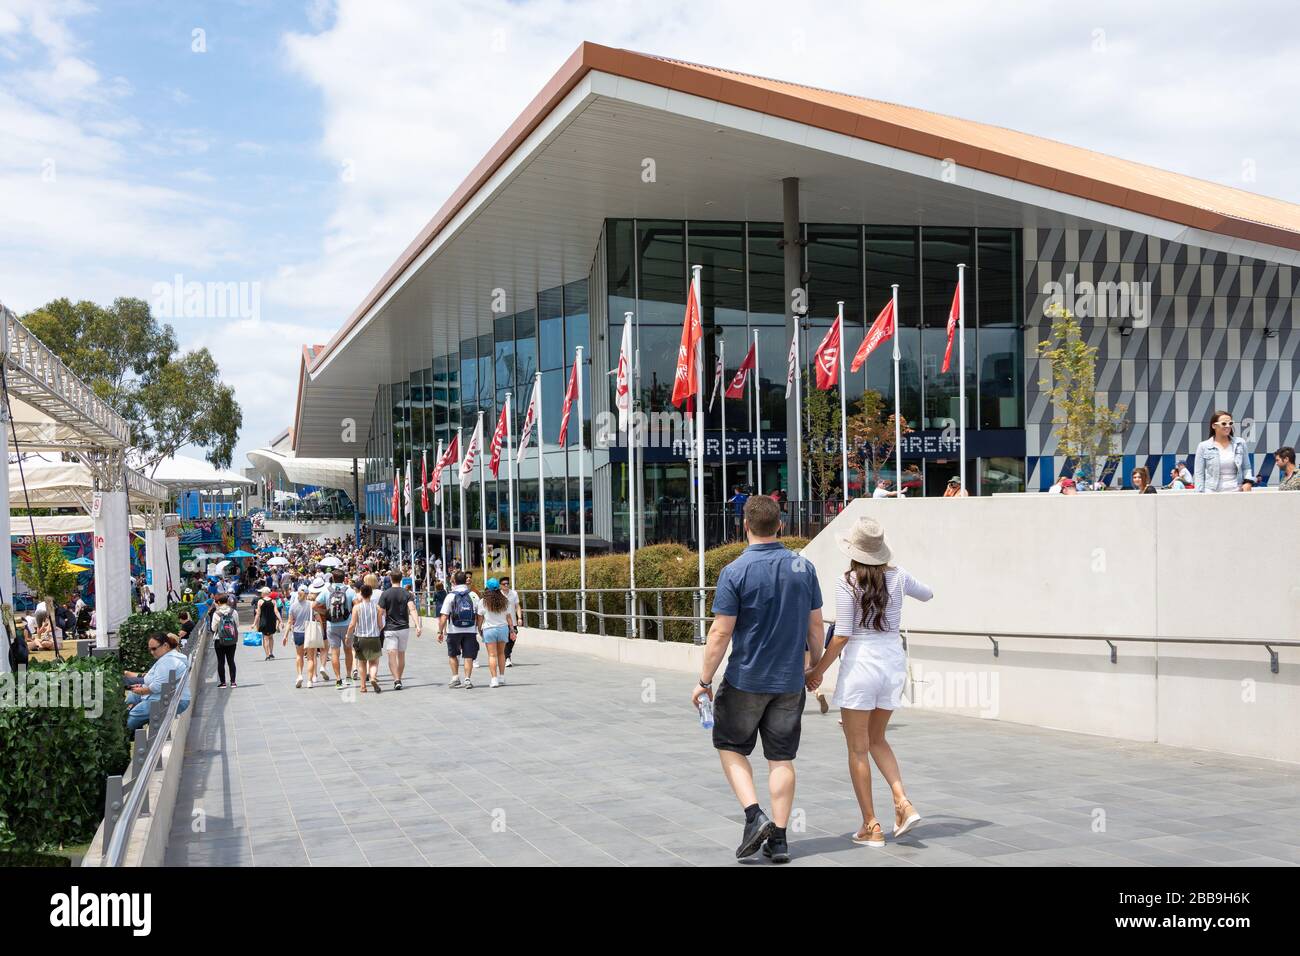 Margaret court Arena au tournoi de tennis Melbourne Open 2020, City Central, Melbourne, Victoria, Australie Banque D'Images